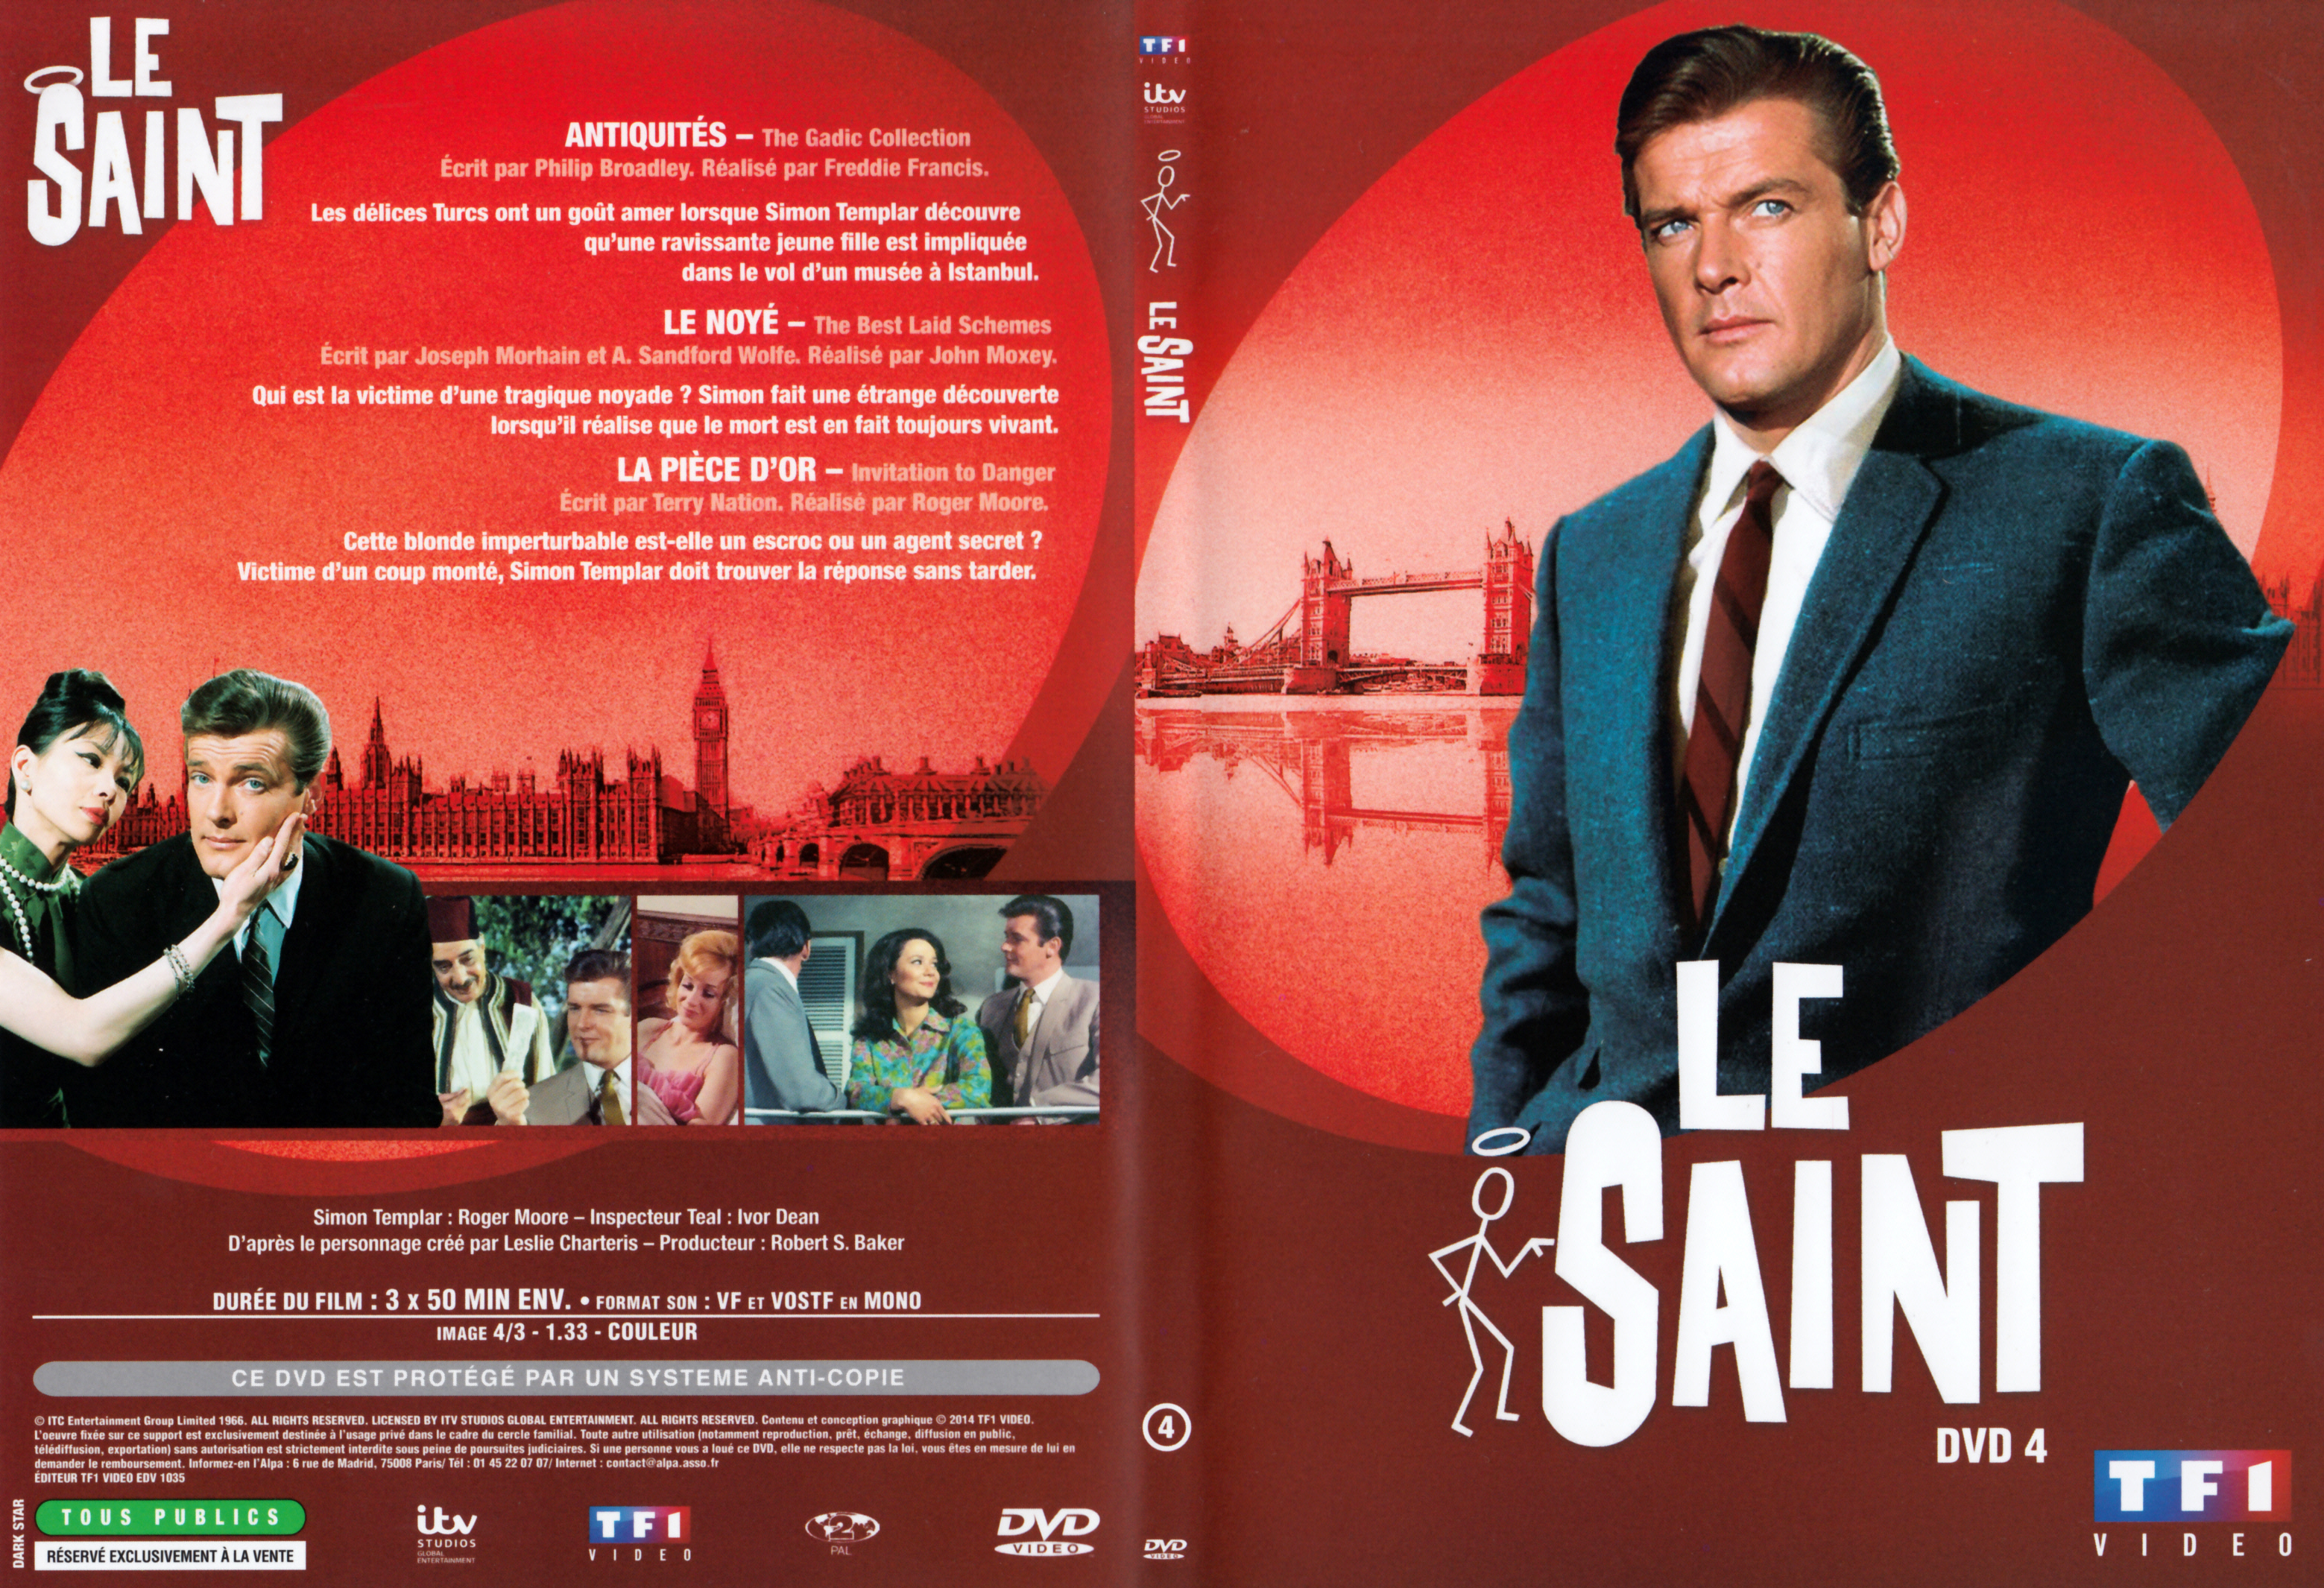 Jaquette DVD Le saint Saison 5 DVD 4